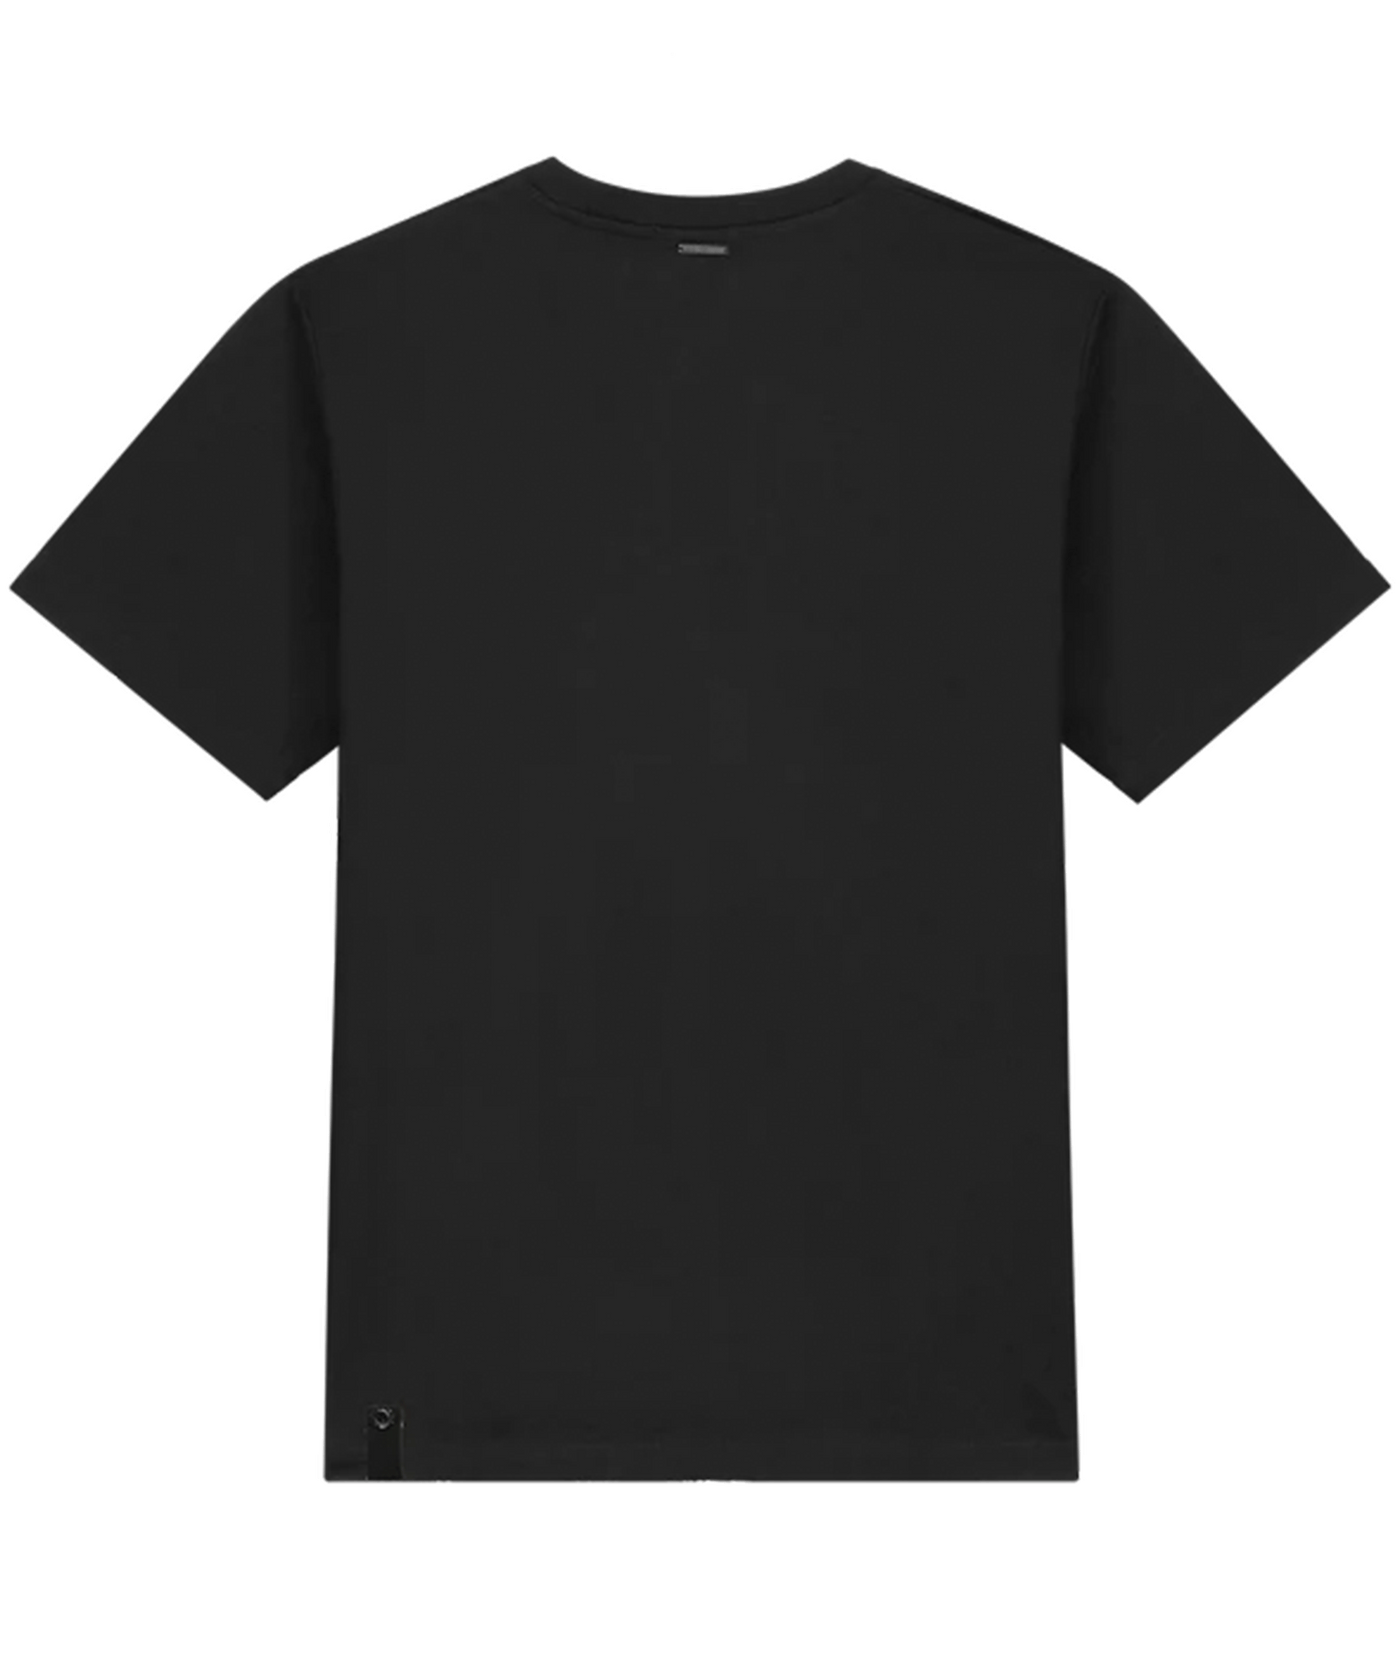 Quotrell - L' Atelier - T-shirt - Black/beige